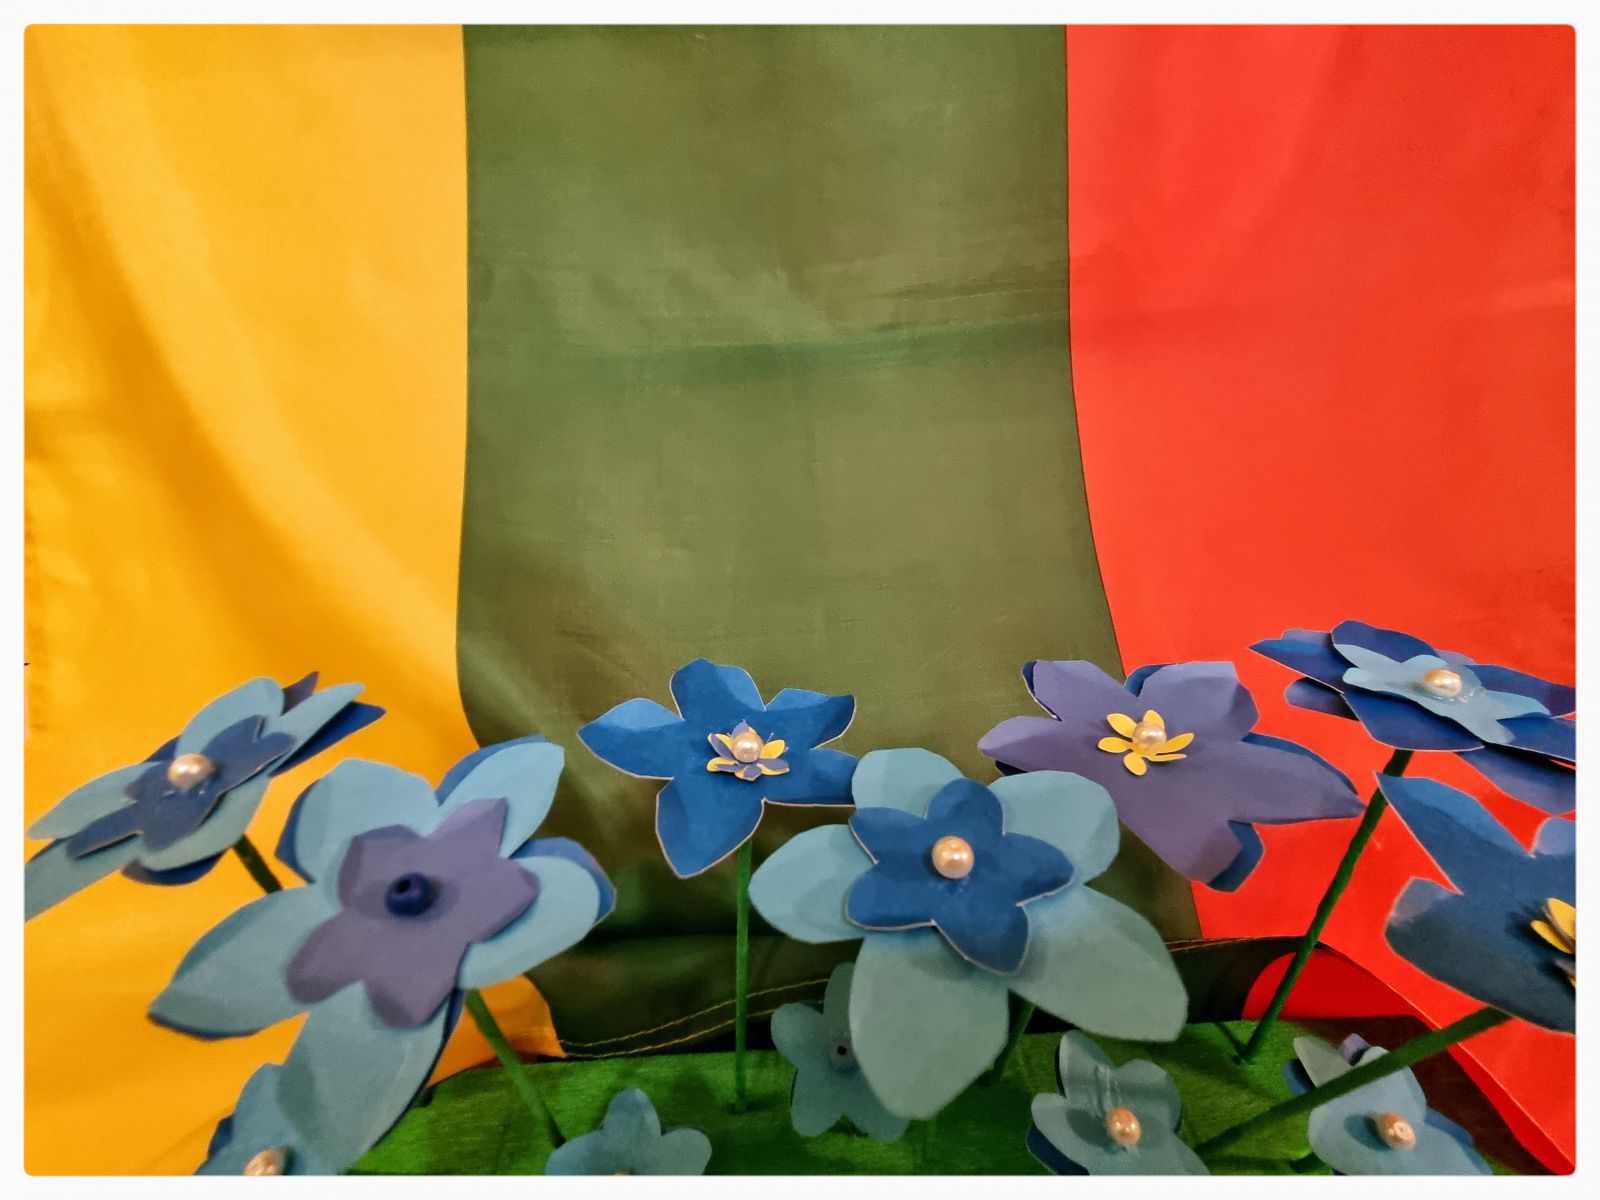 <p>Jau kelintus metus iš eilės sausio mėnesį neužmirštuolė tampa svarbia gėlele Lietuvoje- vieni ją segasi kaip simbolį, leidžiantį išreikšti pagarbą žuvusiems sausio 13-ją už mūsų visą laisvę. Kiekvienais metais vis daugiau žmonių įsitraukia į neužmirštuolės iniciatyvą ir mūsų globos namų gyventojai kirpo, lipdė  žiedus kurie šiandien puošia globos namus ir prisimena dėl ko esame laisvi.</p>
